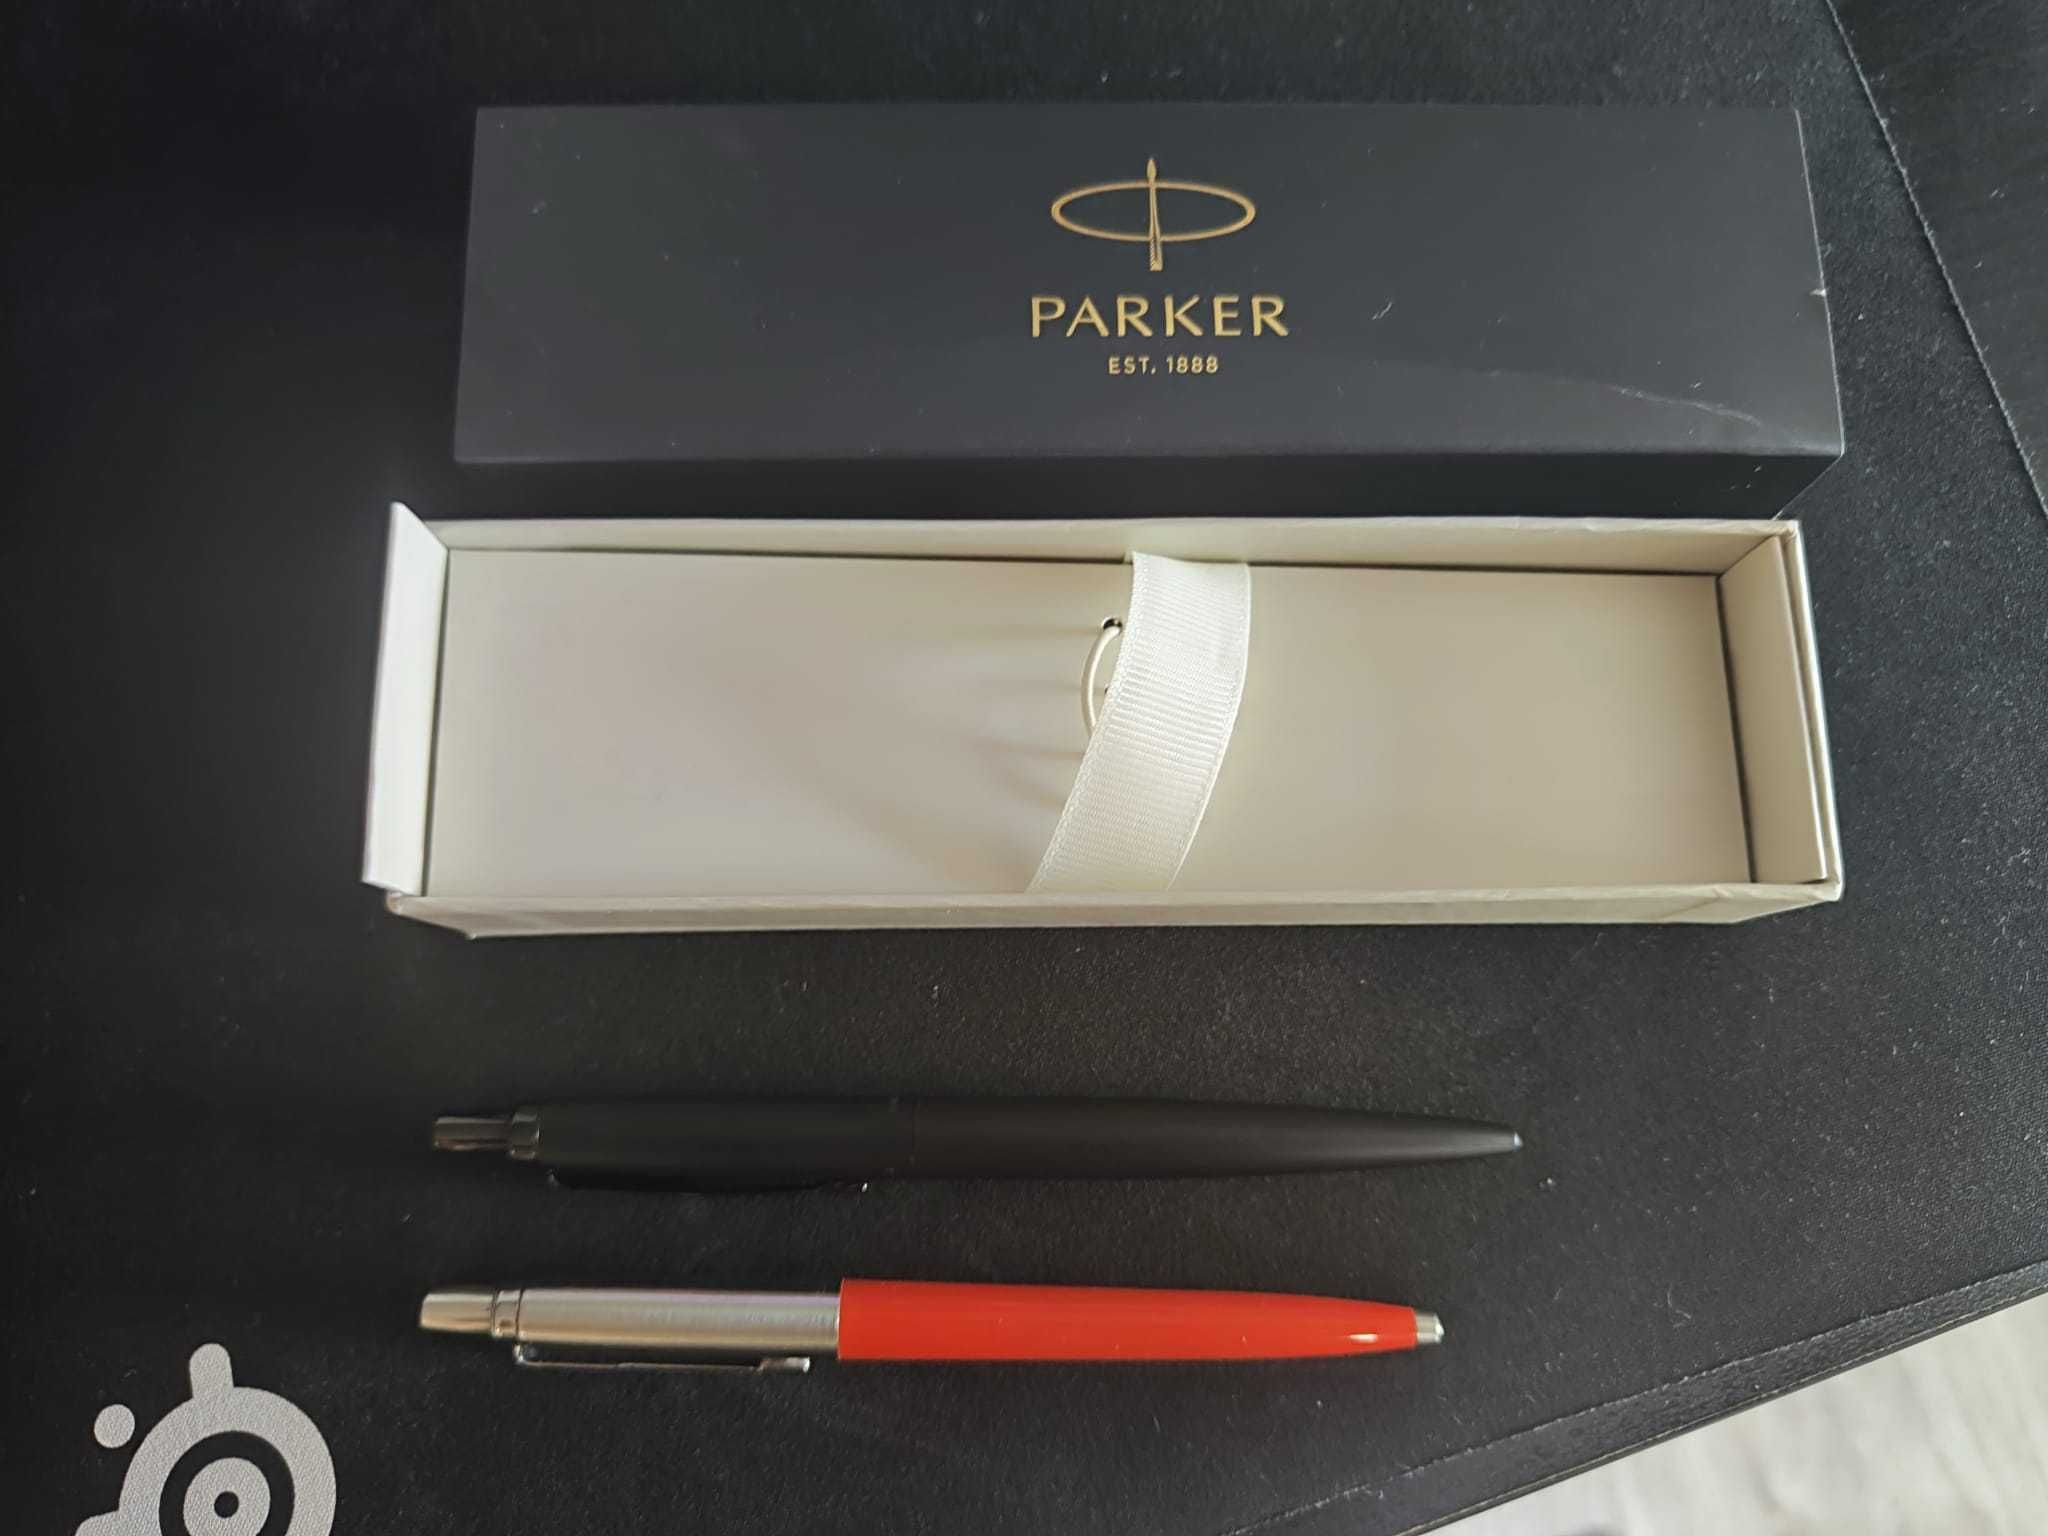 Vendo caneta Parker XL, NOVA, corpo metálico preto mate